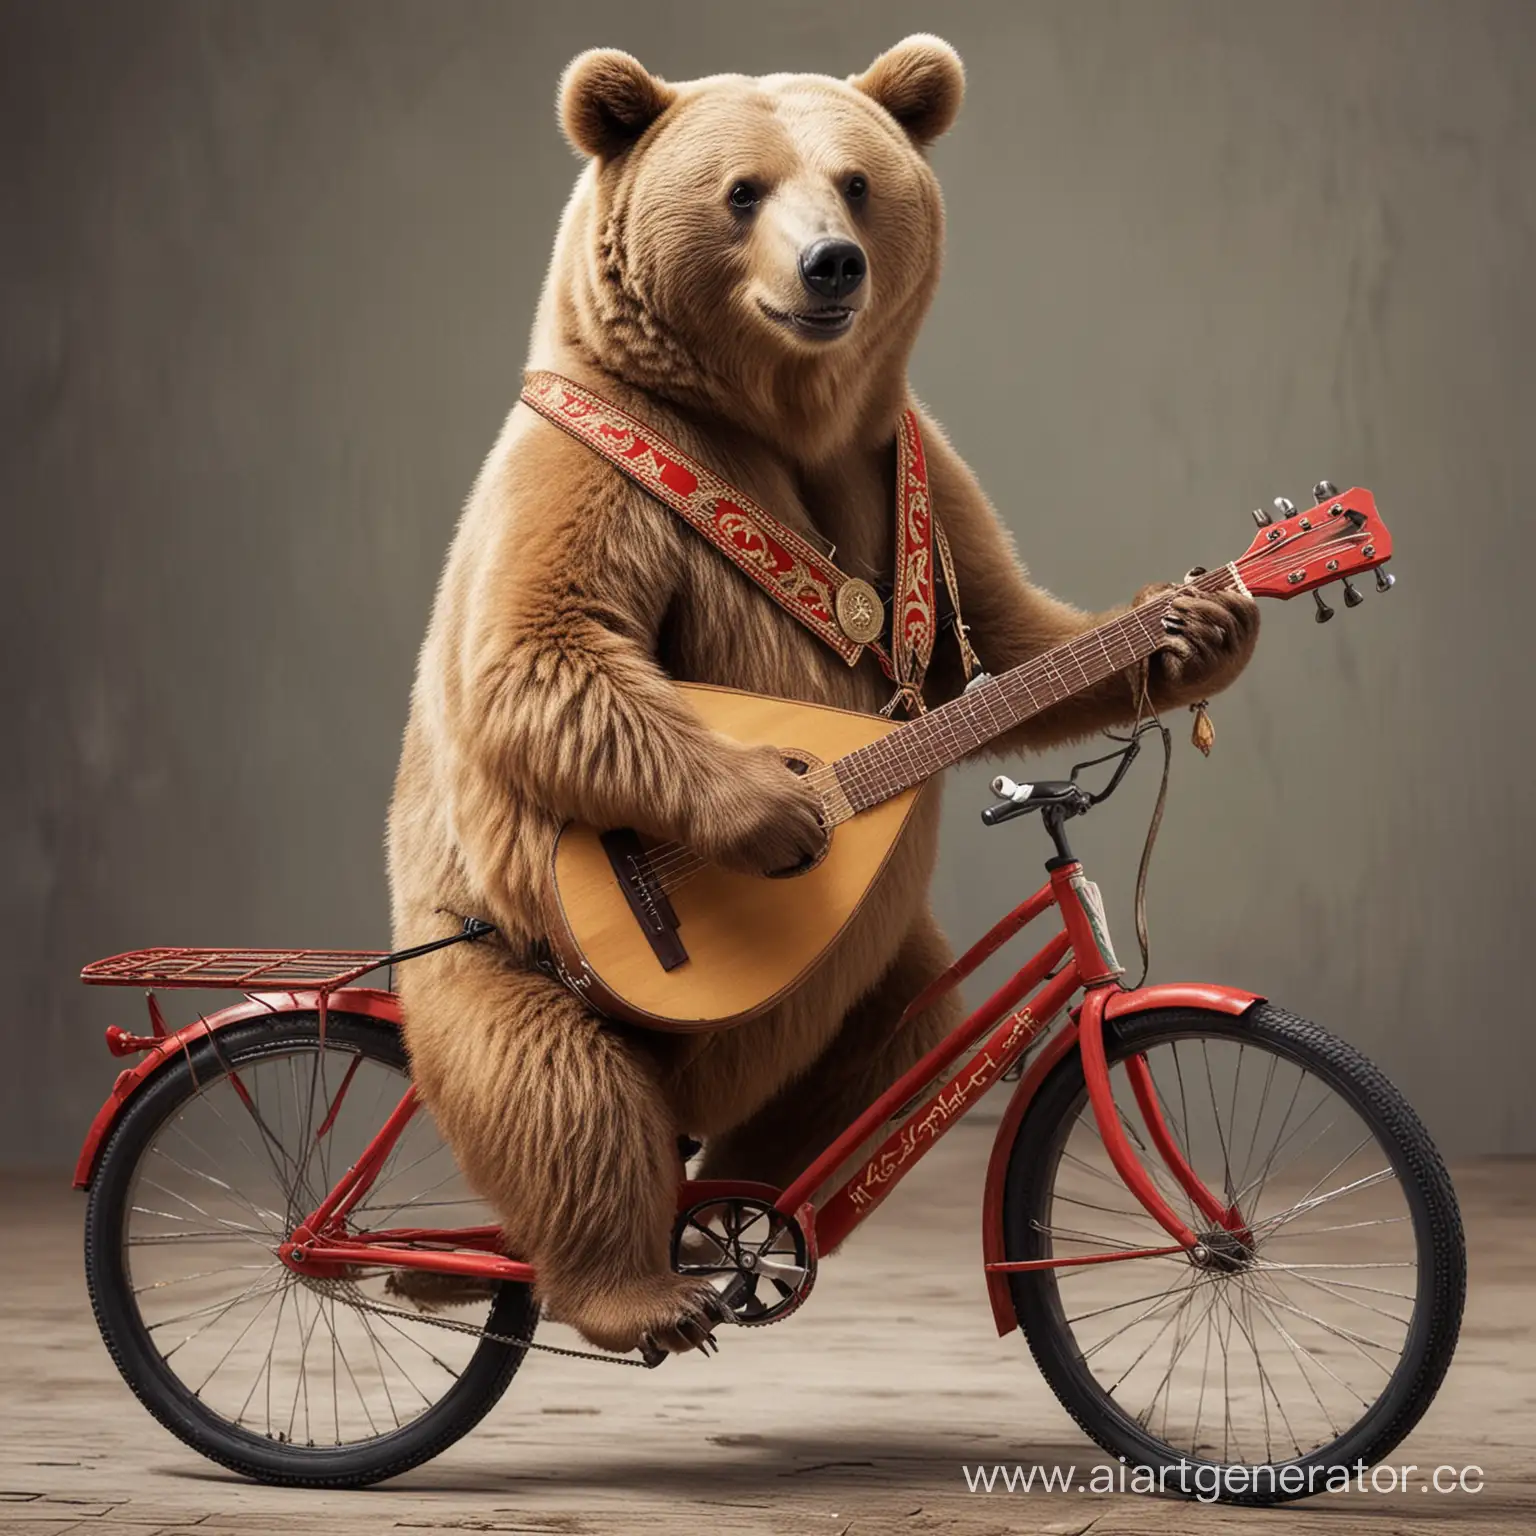 Bear-Riding-Bicycle-and-Playing-Balalaika-with-Vodka